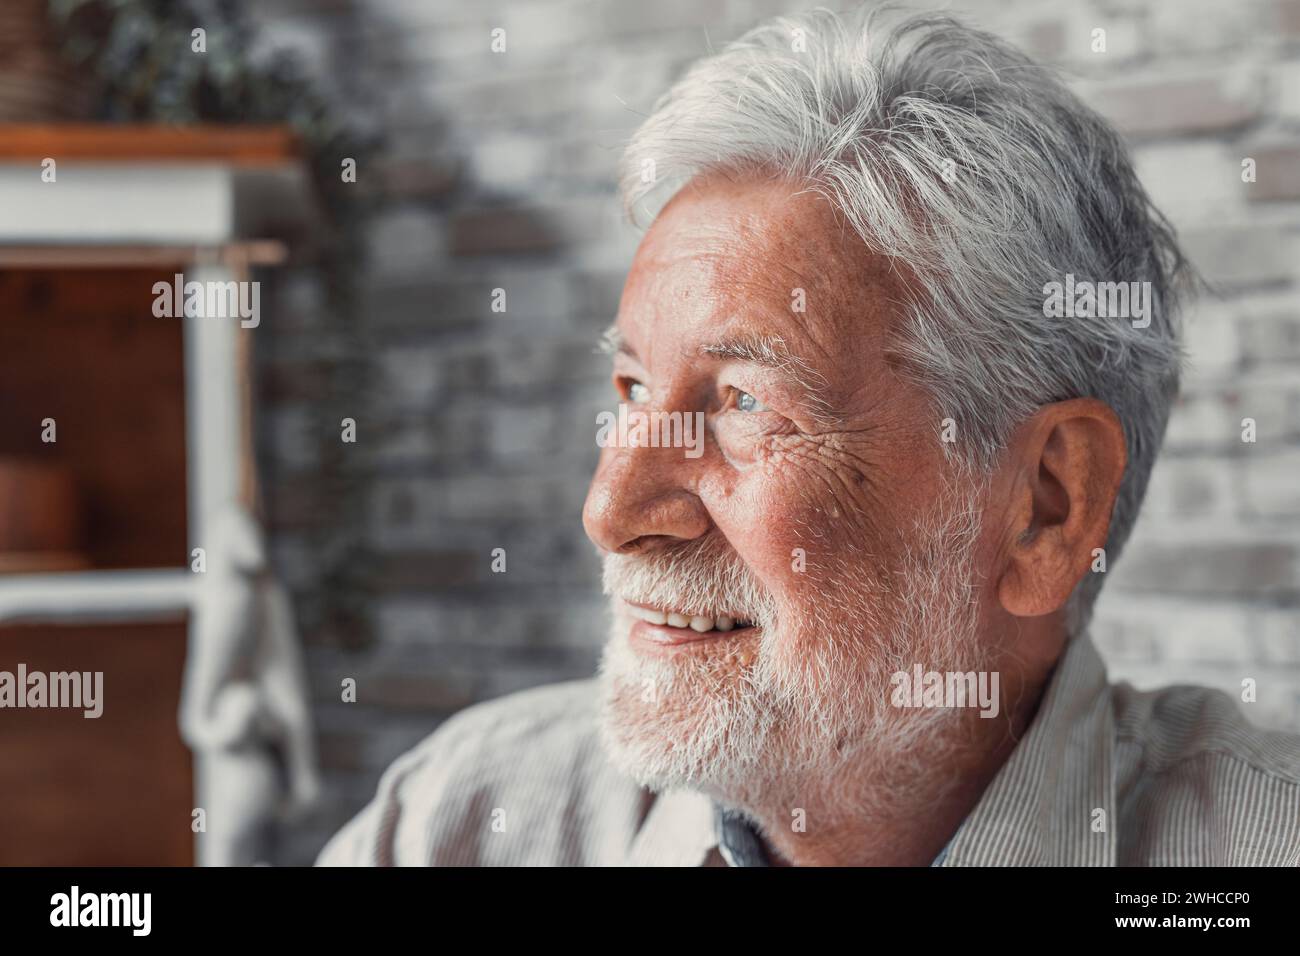 Ein hübscher älterer Mann, der die Kamera anstarrt, fühlt sich glücklich an, wenn man das Gesicht aus der Nähe betrachtet. Senior Werbung professionelle Zahnklinik, Zahnreparatur und Check-up Dienstleistungen, Krankenversicherung Abdeckung für ältere Konzept Stockfoto